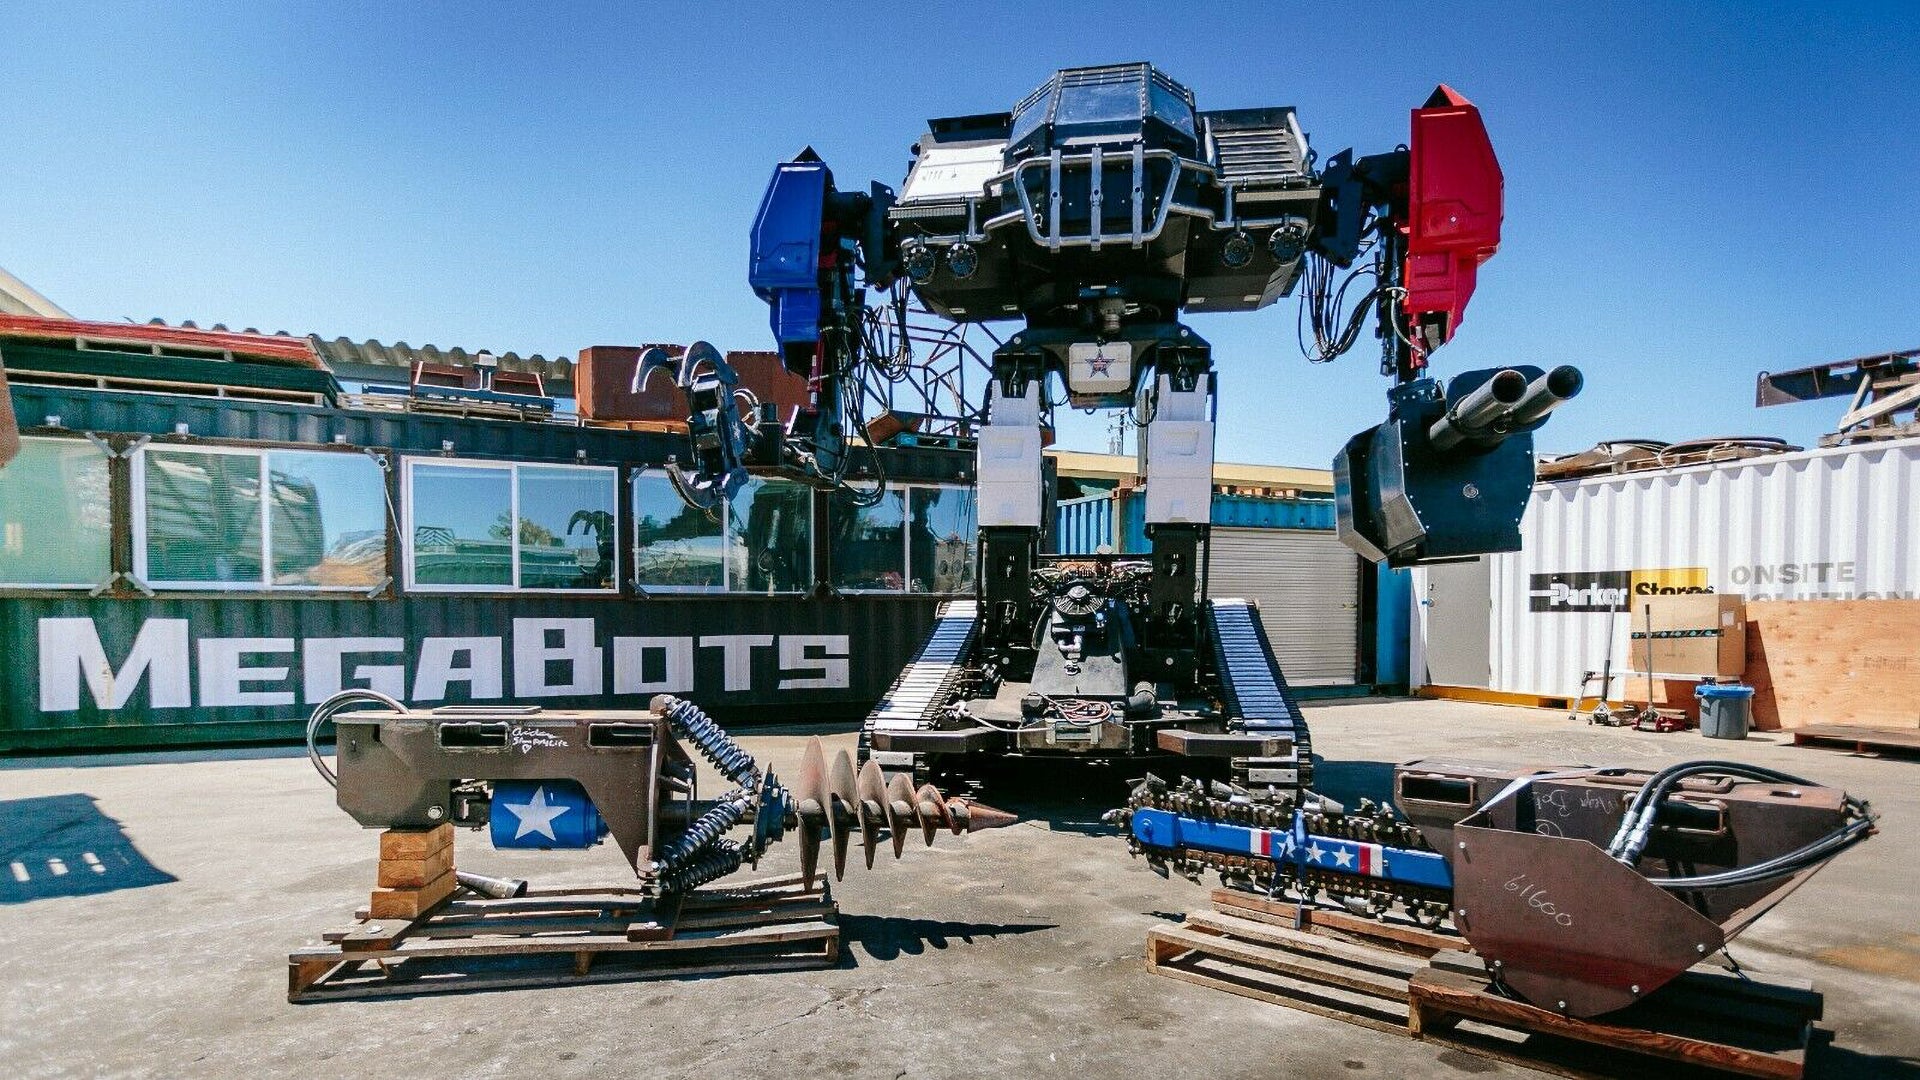 Робот Eagle Prime. Megabot робот. Необычные роботы. Гигантский робот необычный. Робот пауэр